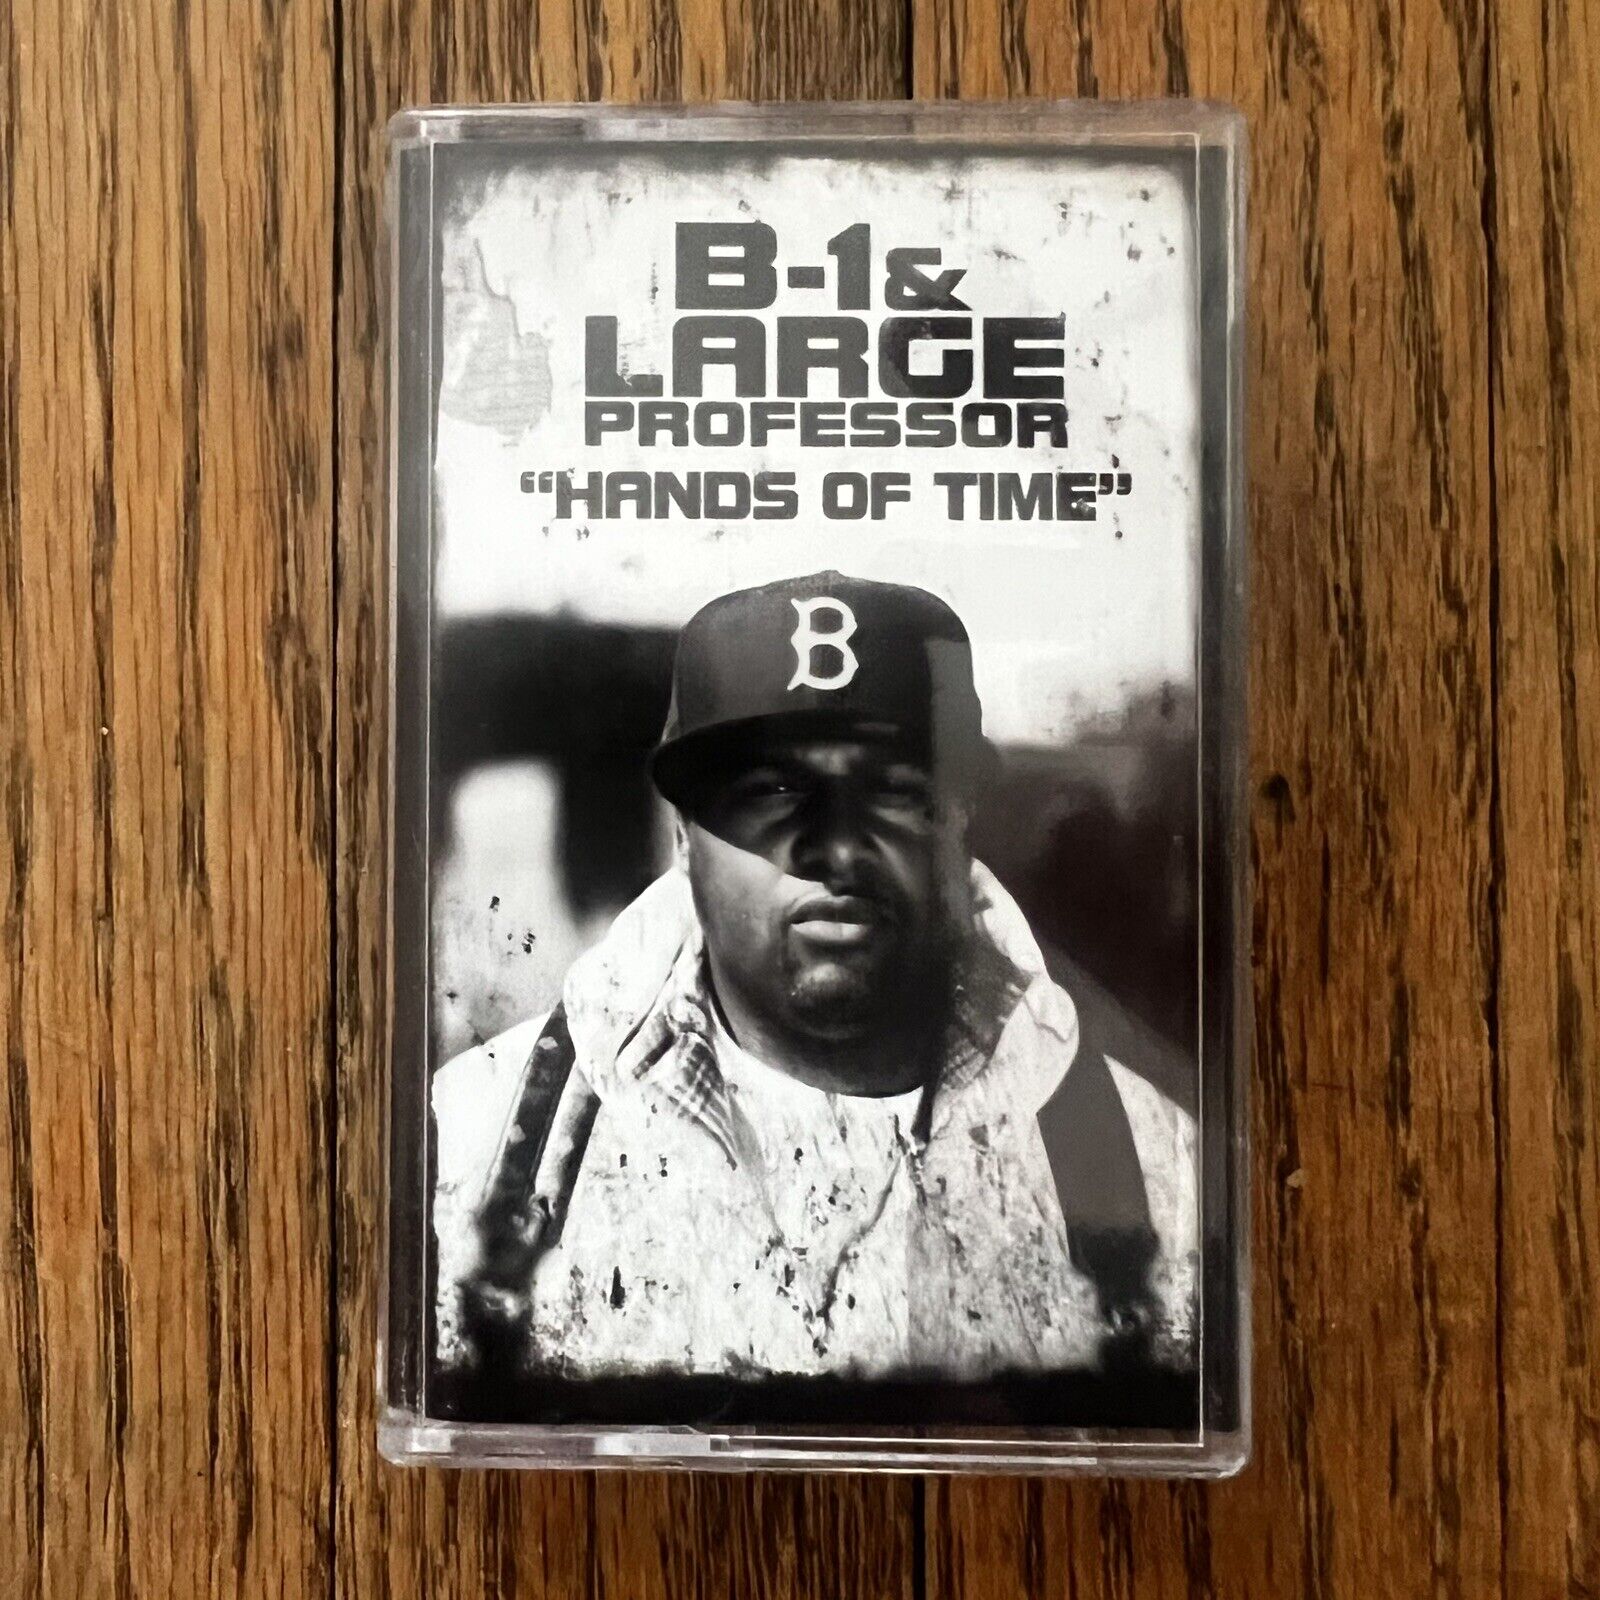 B-1 & Large Professor - Hands Of Time Cassette Tape 2013 Hip Hop Rap Limited Ed